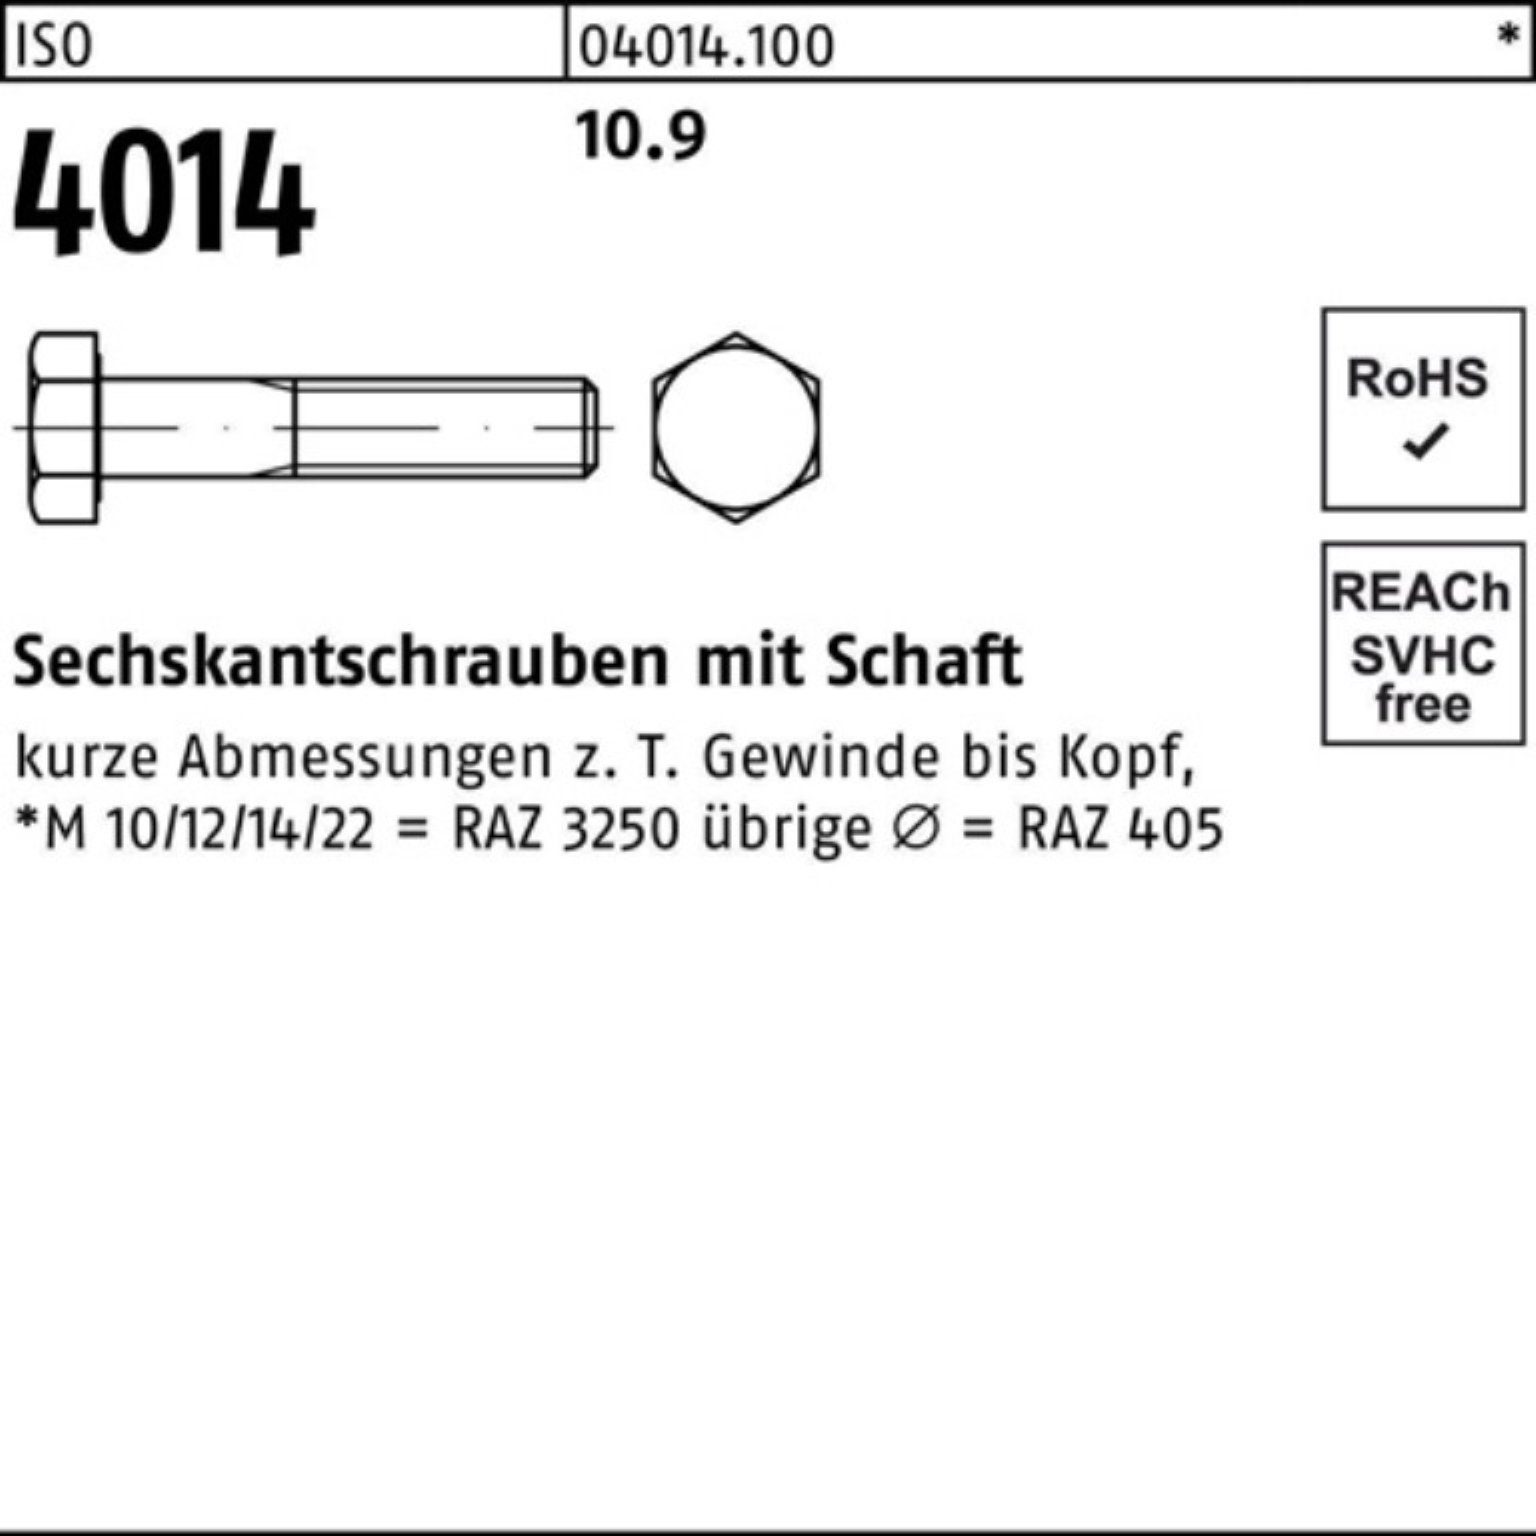 IS Stück 10.9 Sechskantschraube Sechskantschraube M45x Bufab Schaft 4014 ISO 240 Pack 1 100er